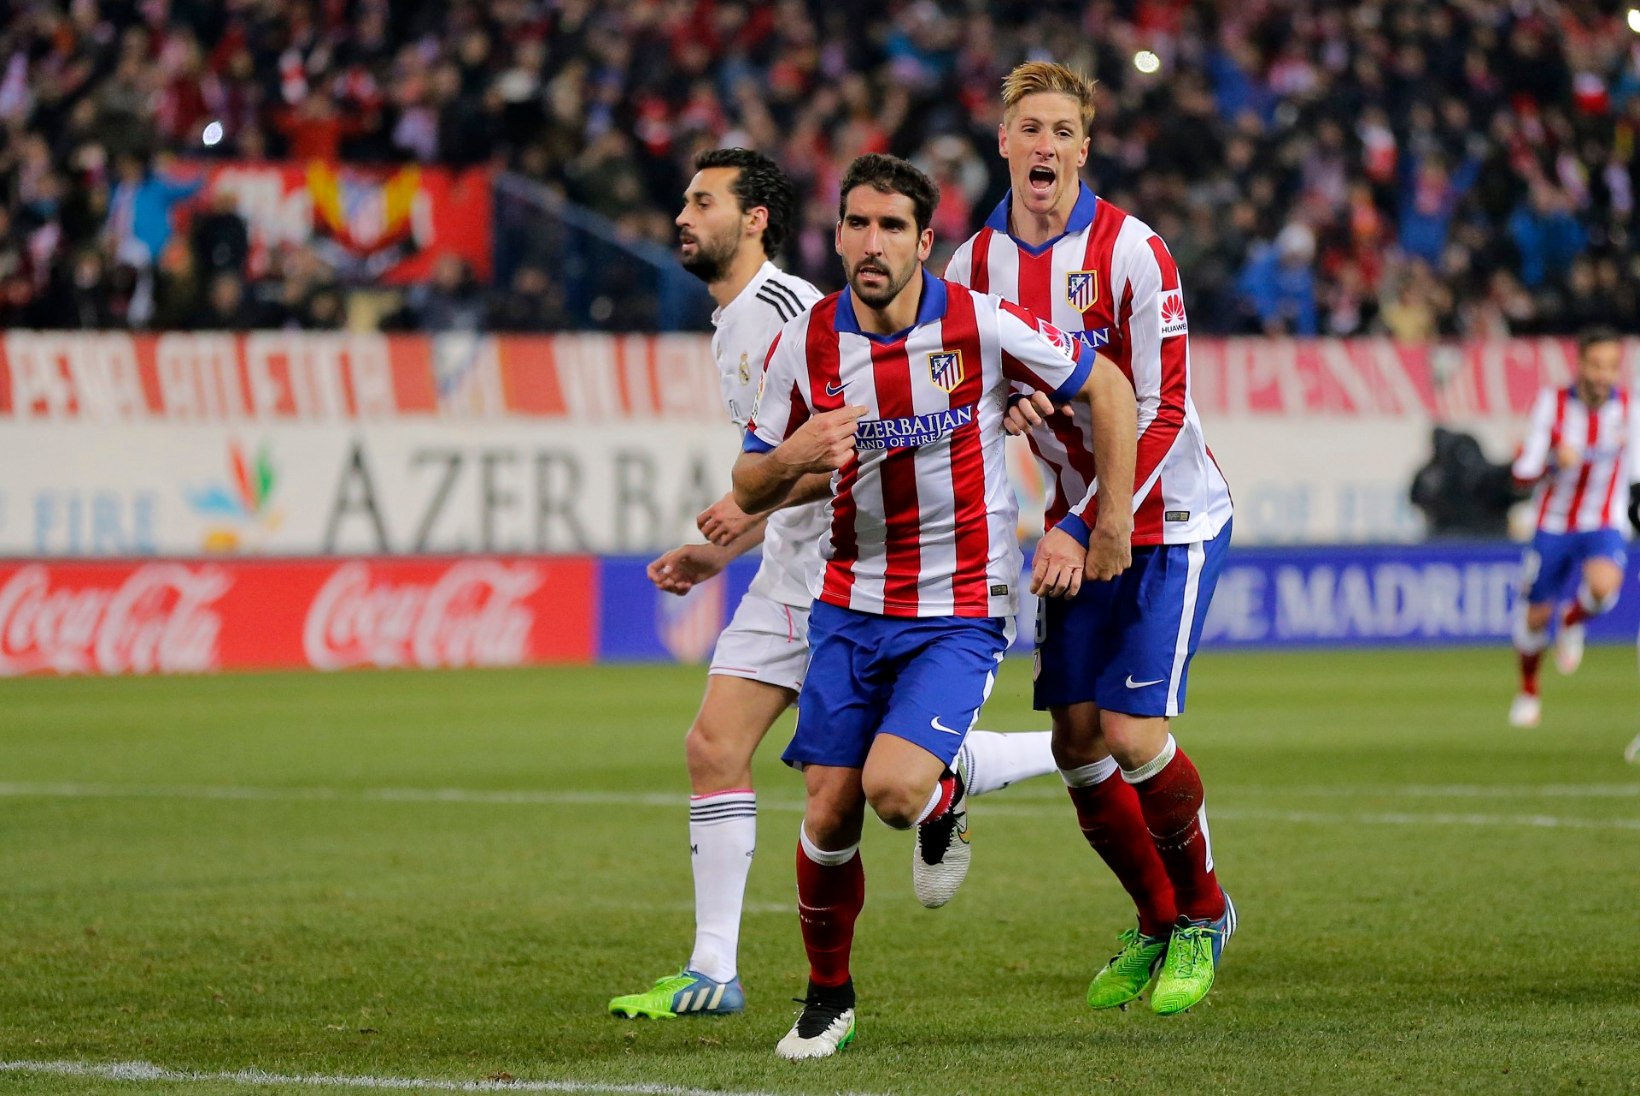 FOTOD: Atletico seljatas Torrese naasmismängus Madridi Reali!